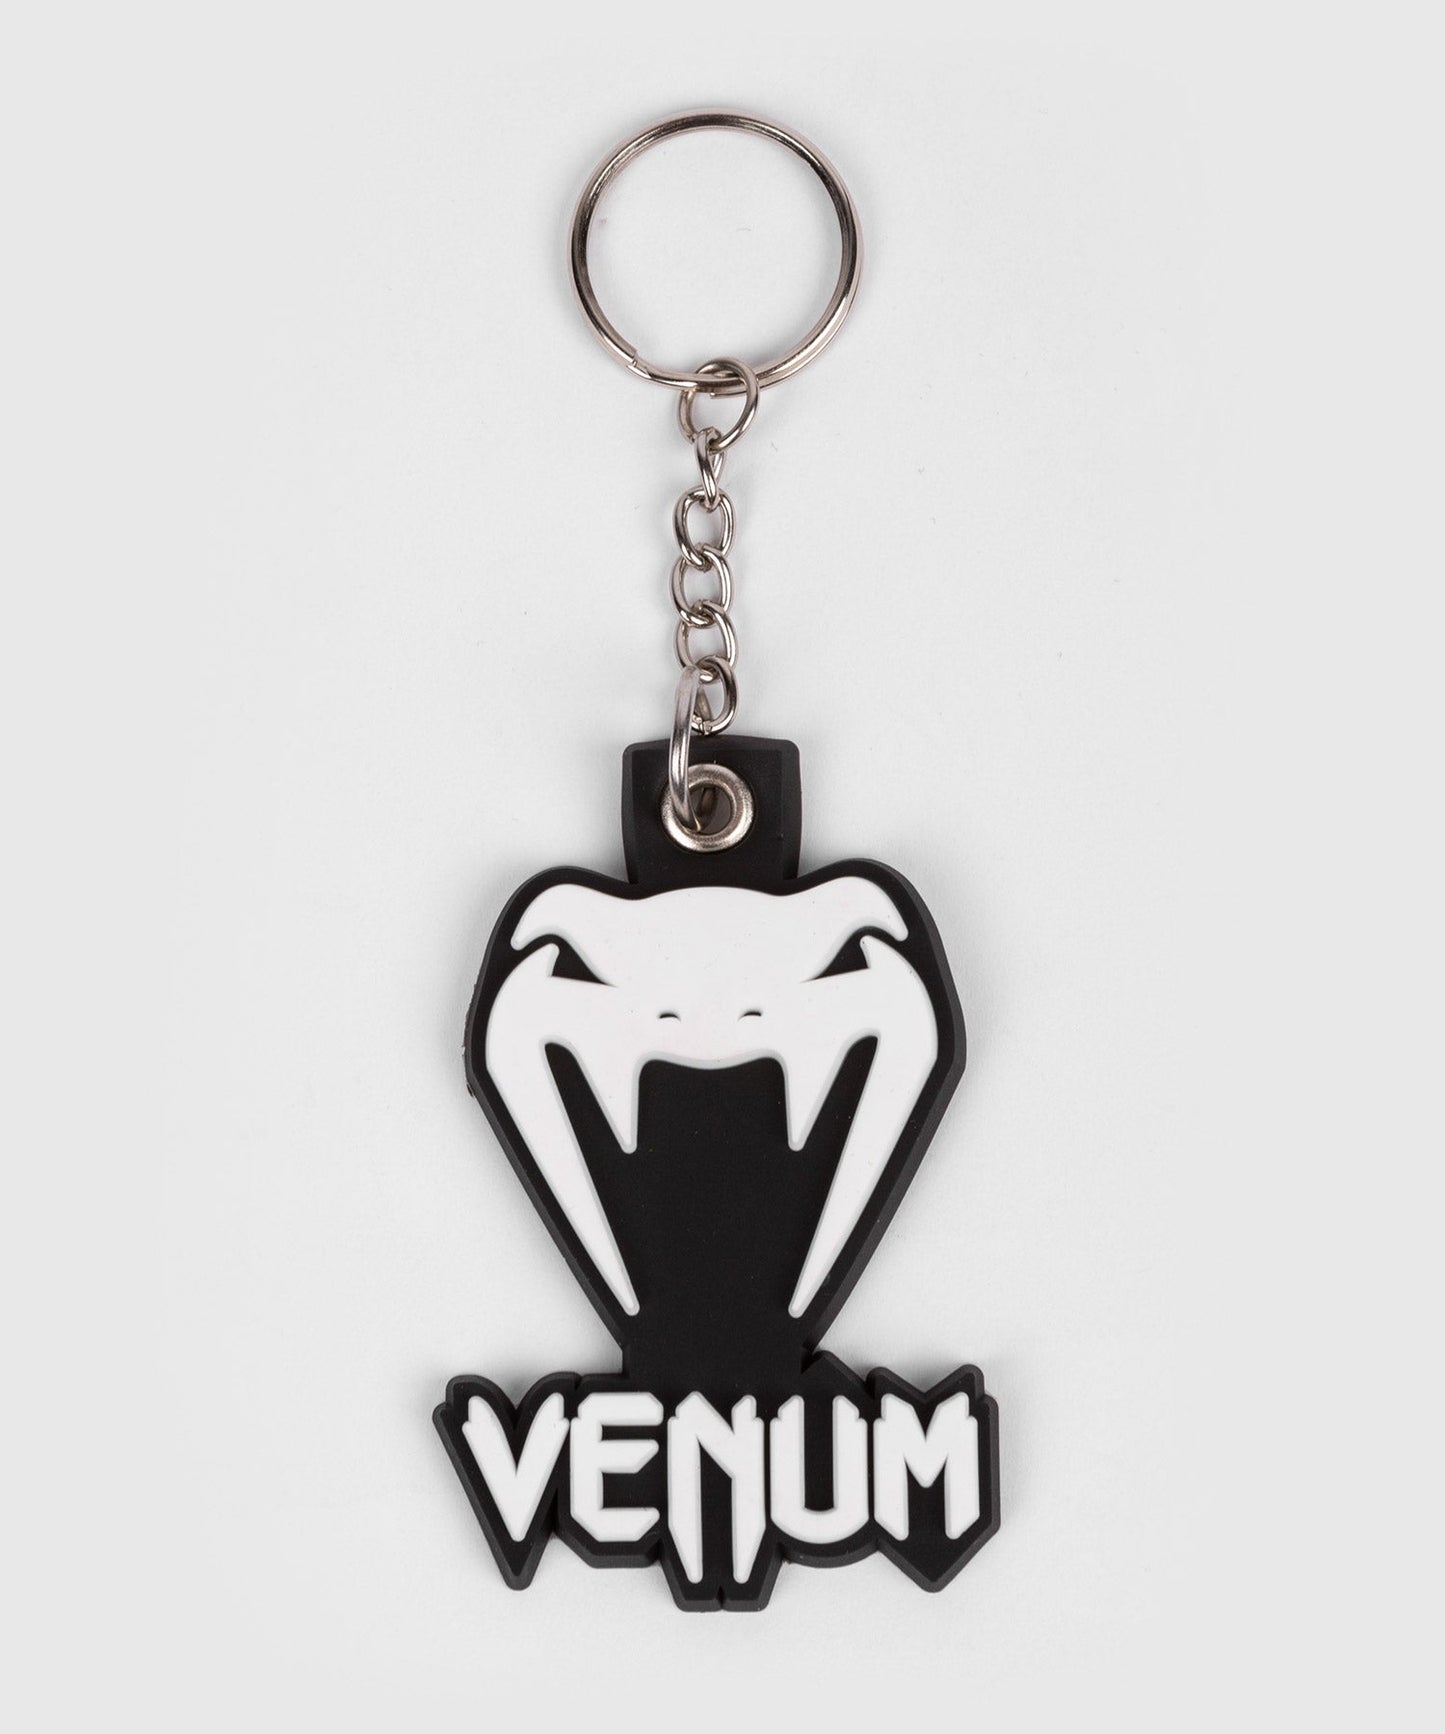 Venum Classic Key Ring